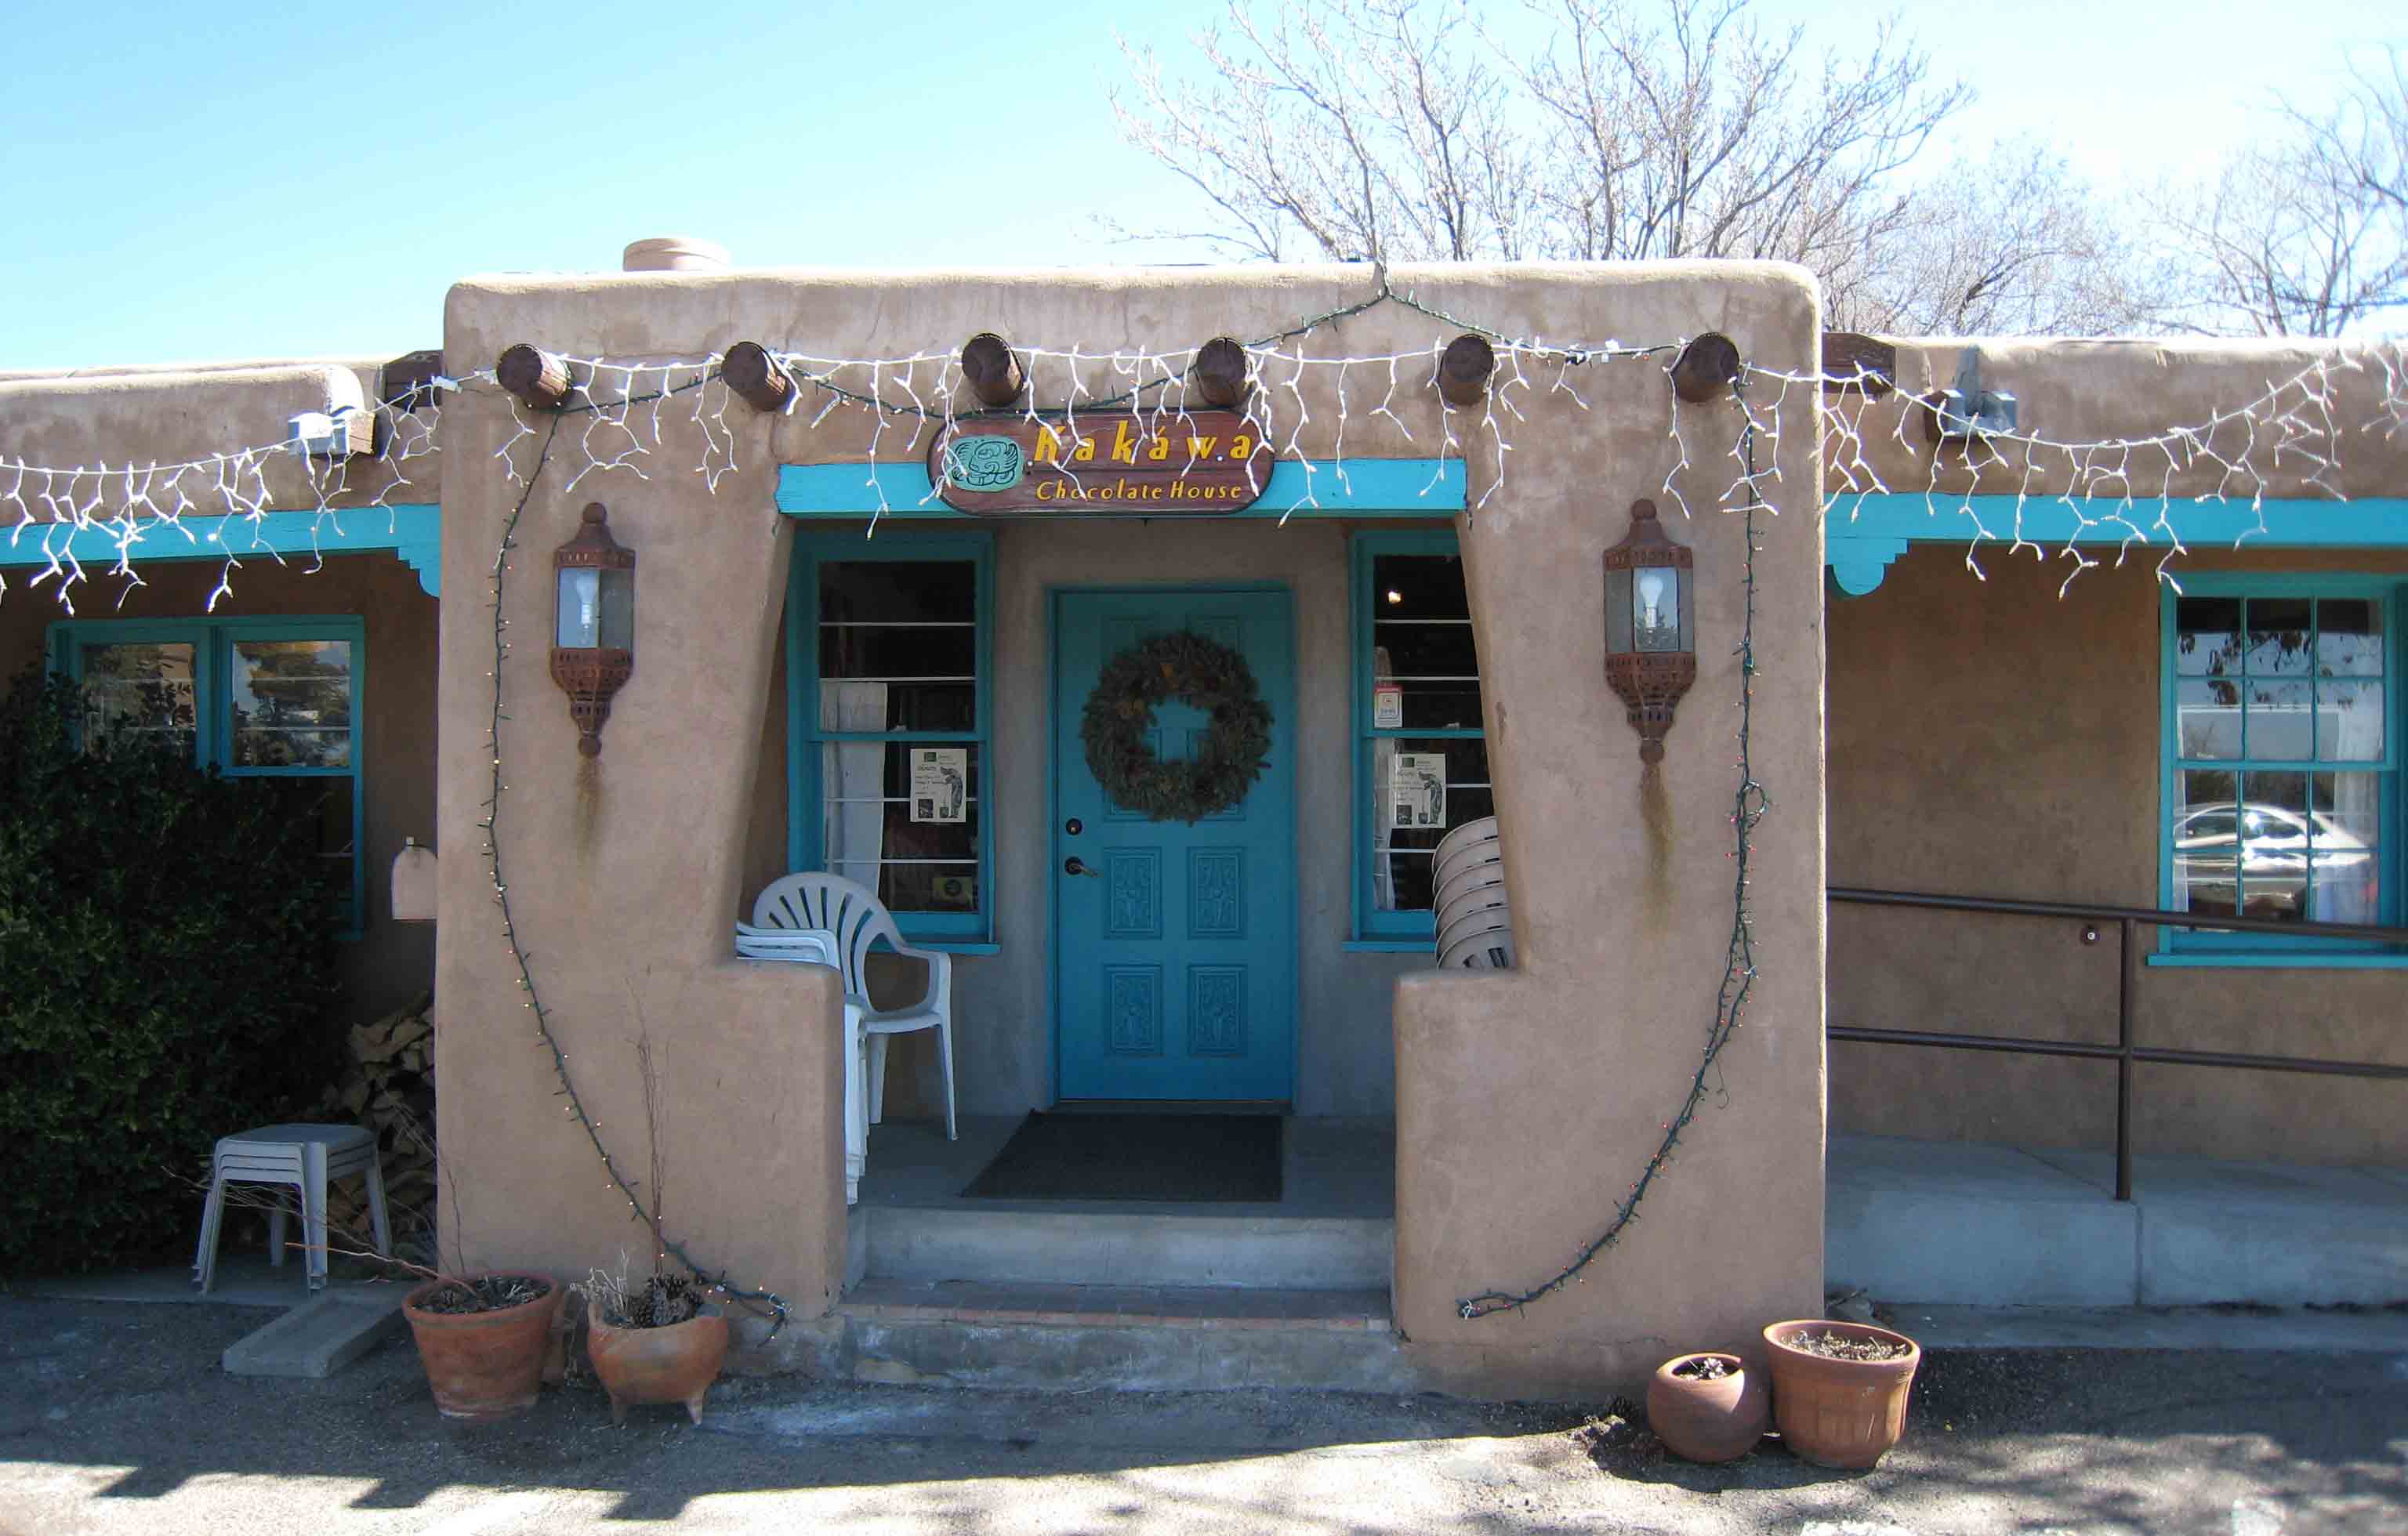 Kakawa Chocolate House – Santa Fe, New Mexico